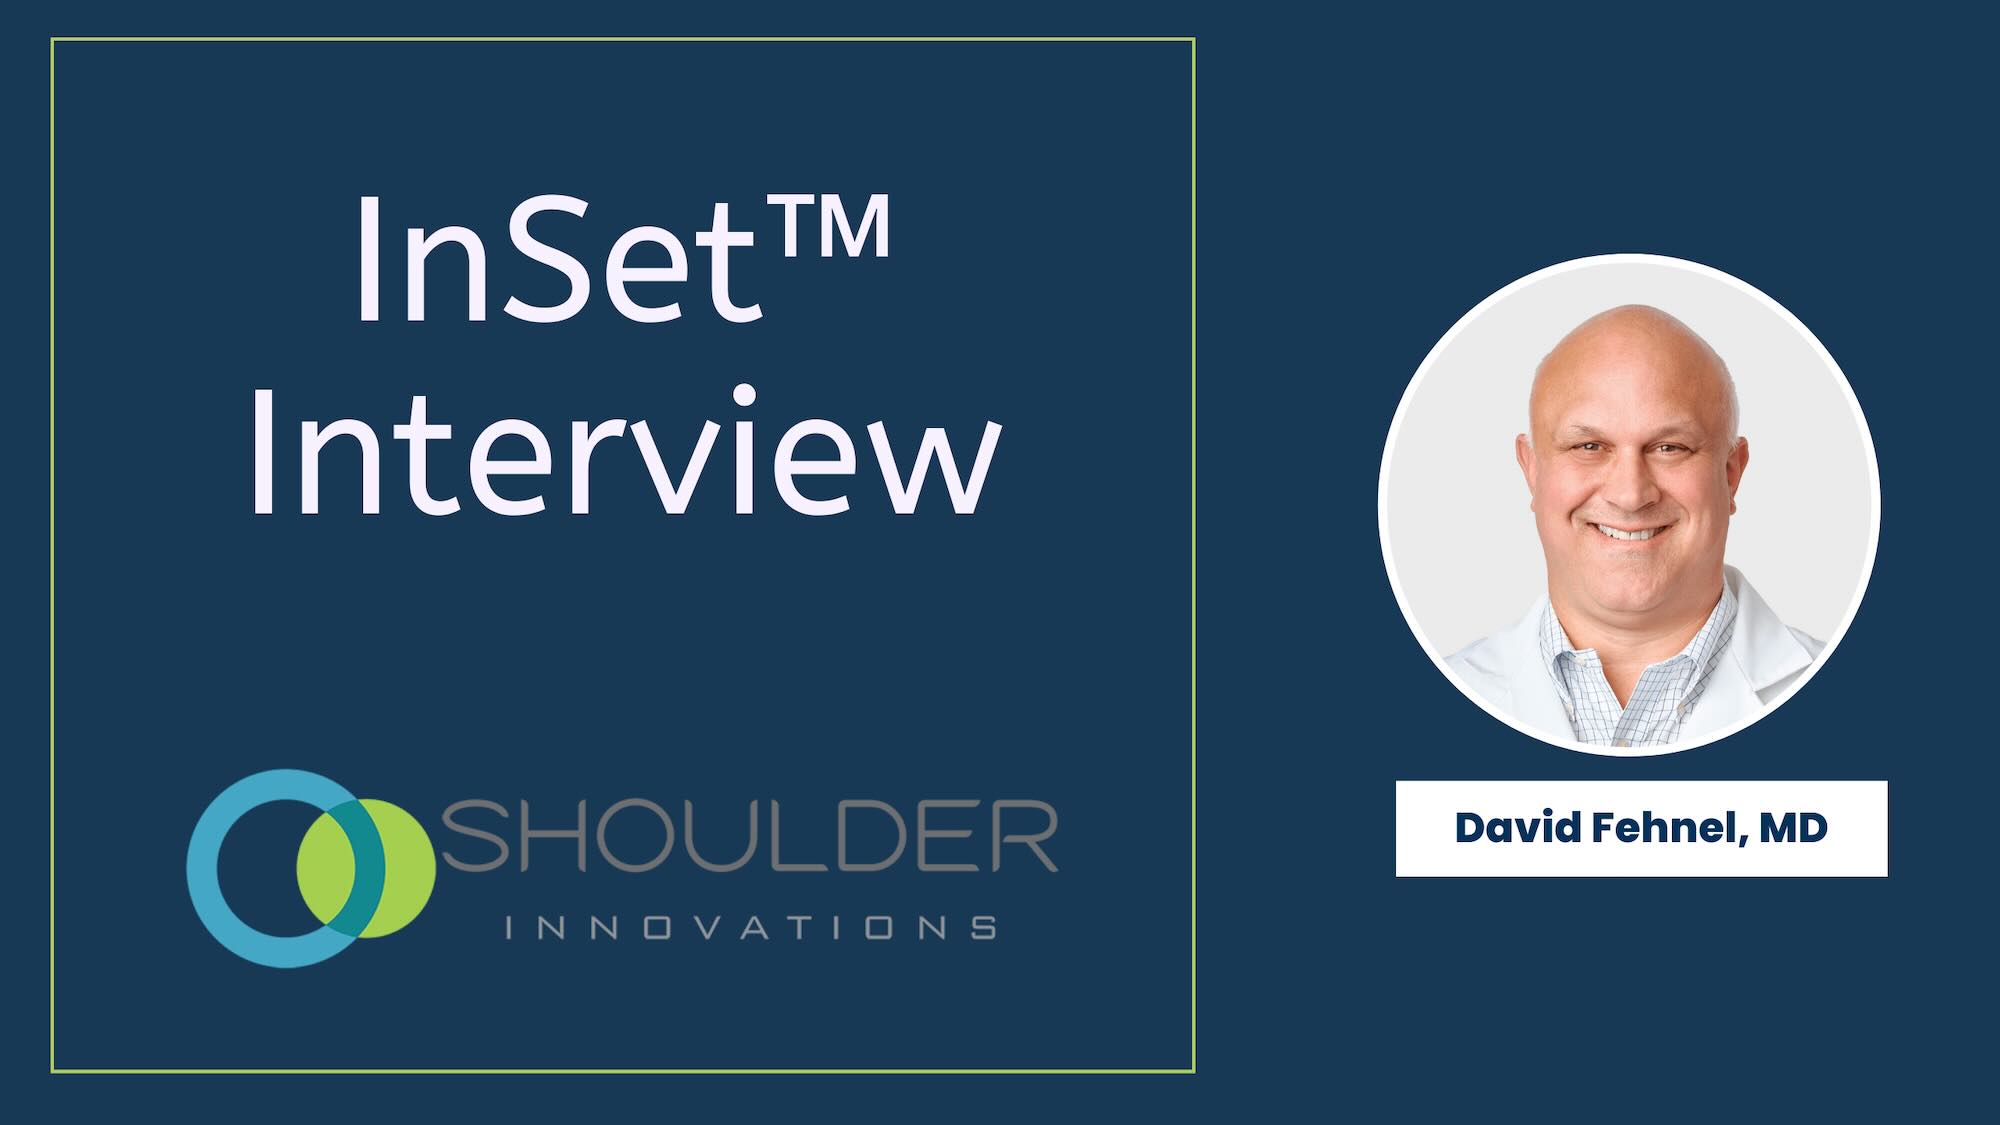 Dr. David Fehnel Shoulder Innovations interview